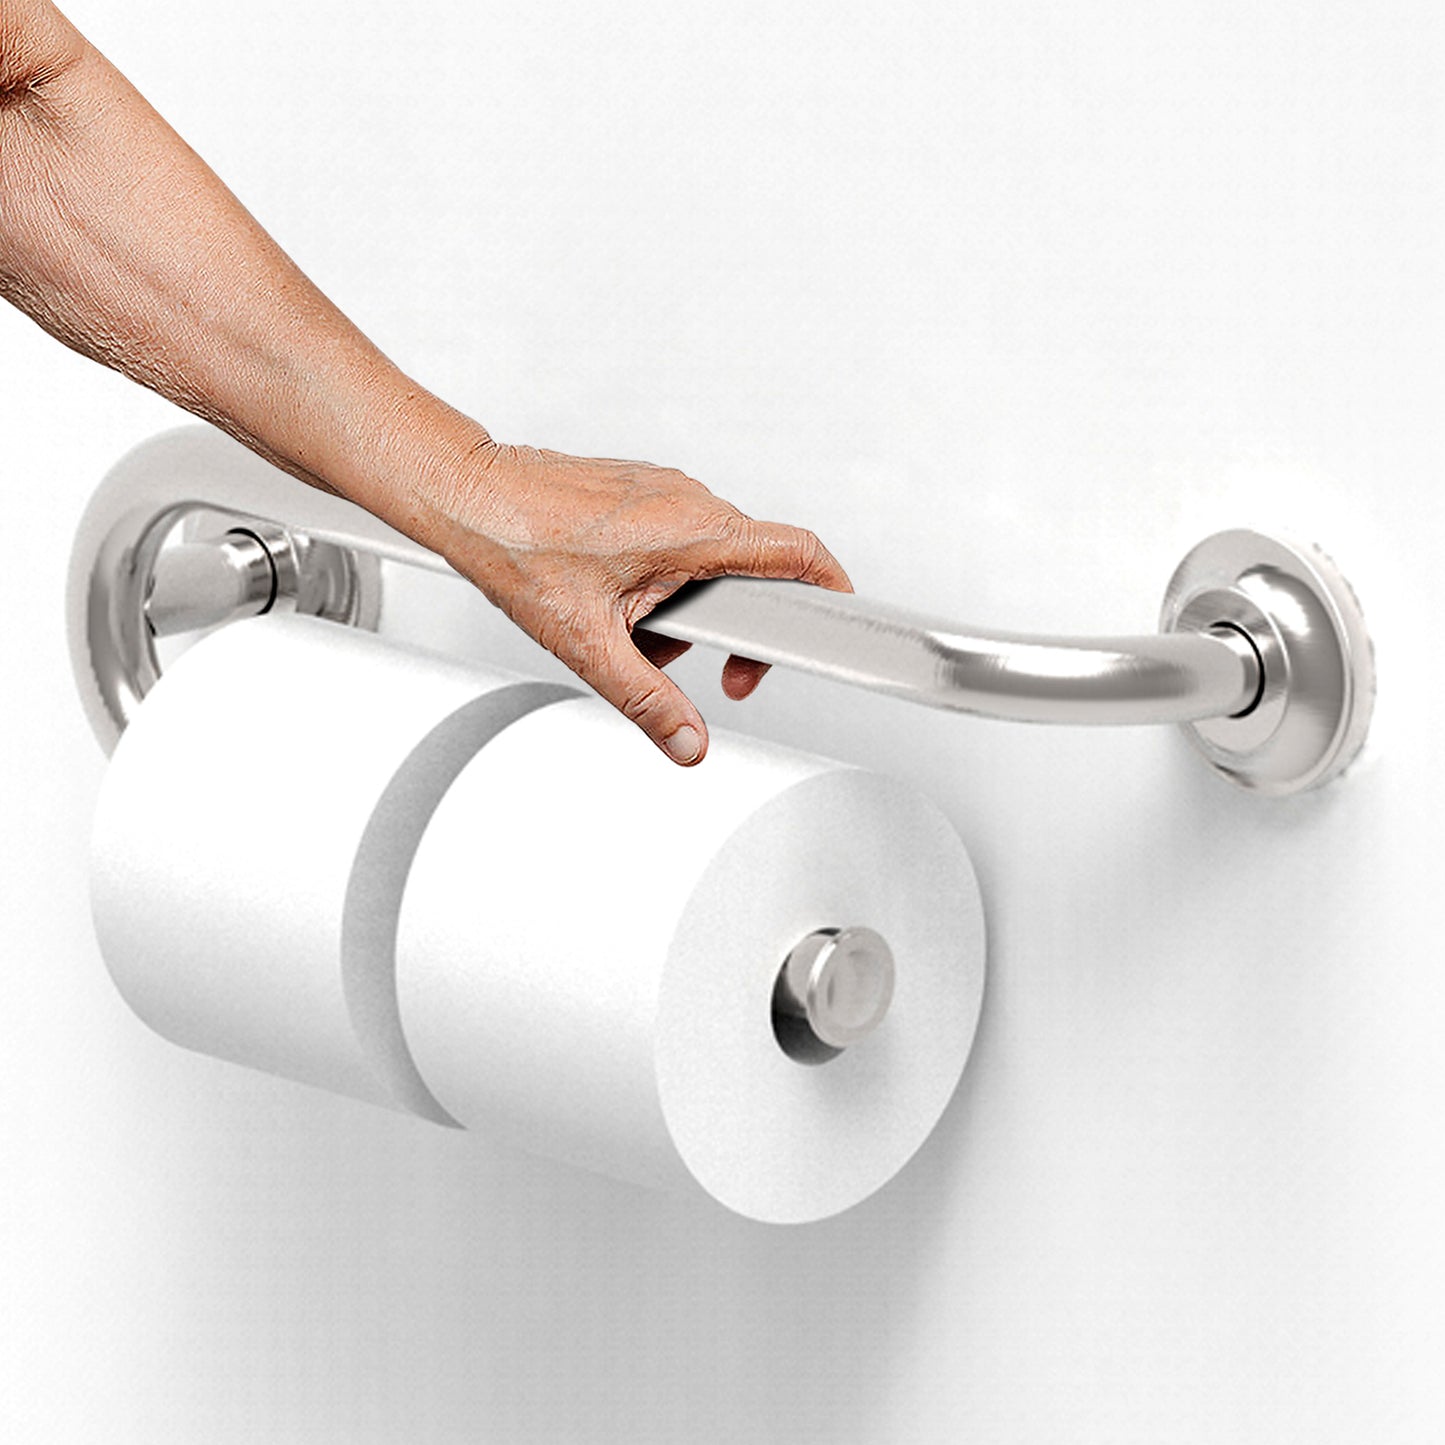 Grab Bar with Toilet Paper Holder (for 2 Mega Rolls)